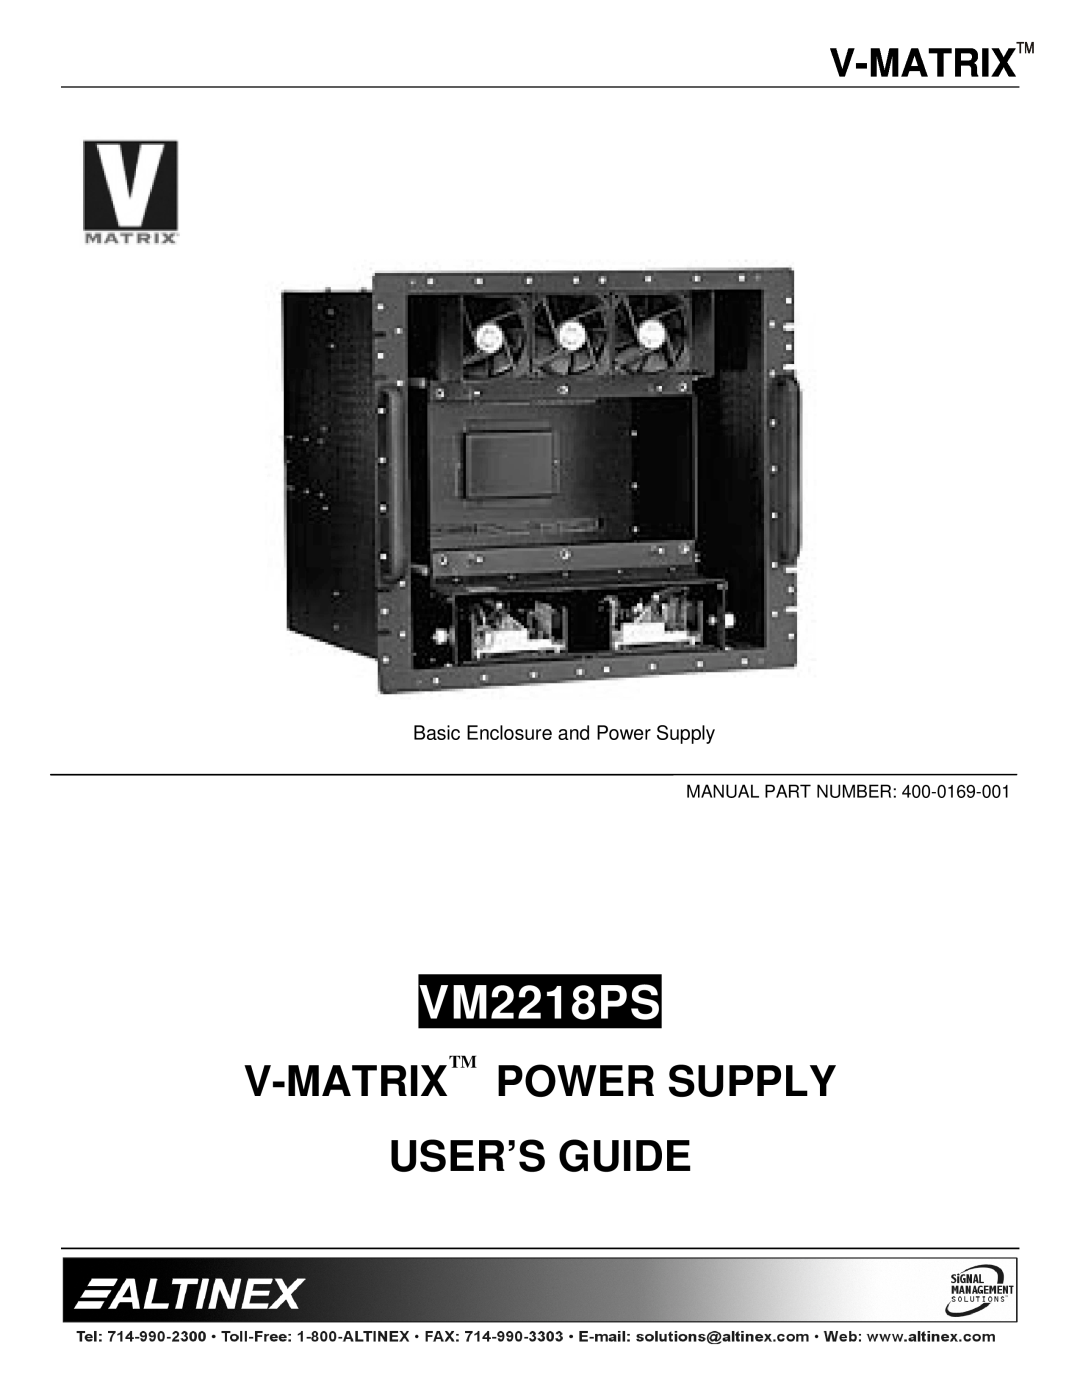 Altinex VM2218PS manual V-Matrixtm Power Supply User’S Guide, Manual Part Number 